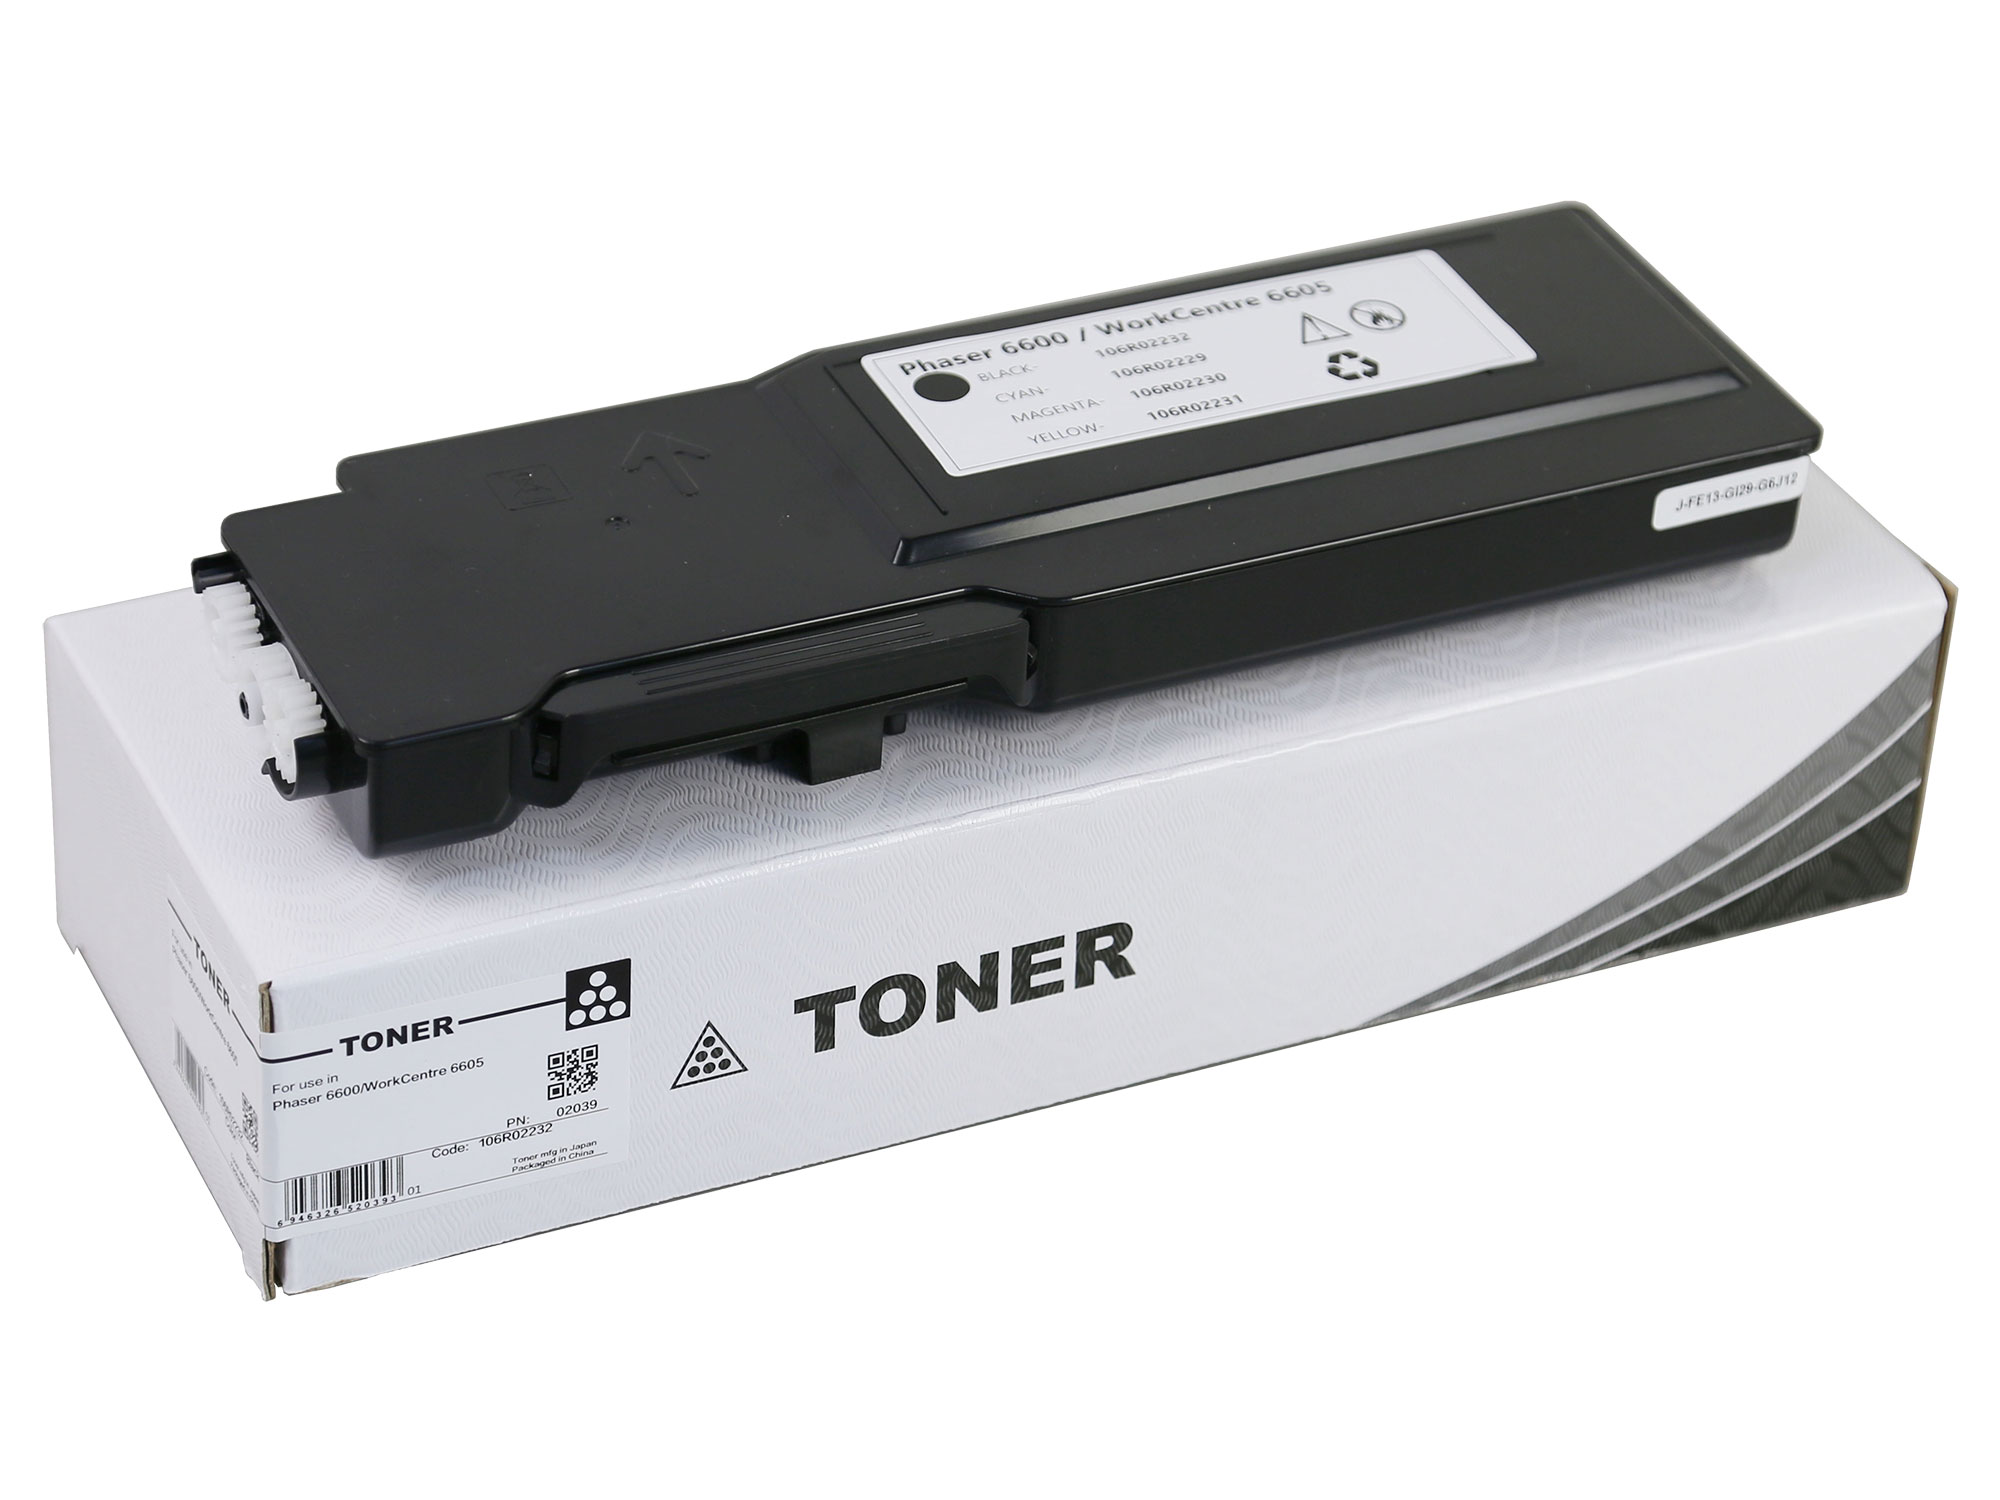 106R02232 Black Toner Cartridge-Chemical for Xerox Phaser 6600